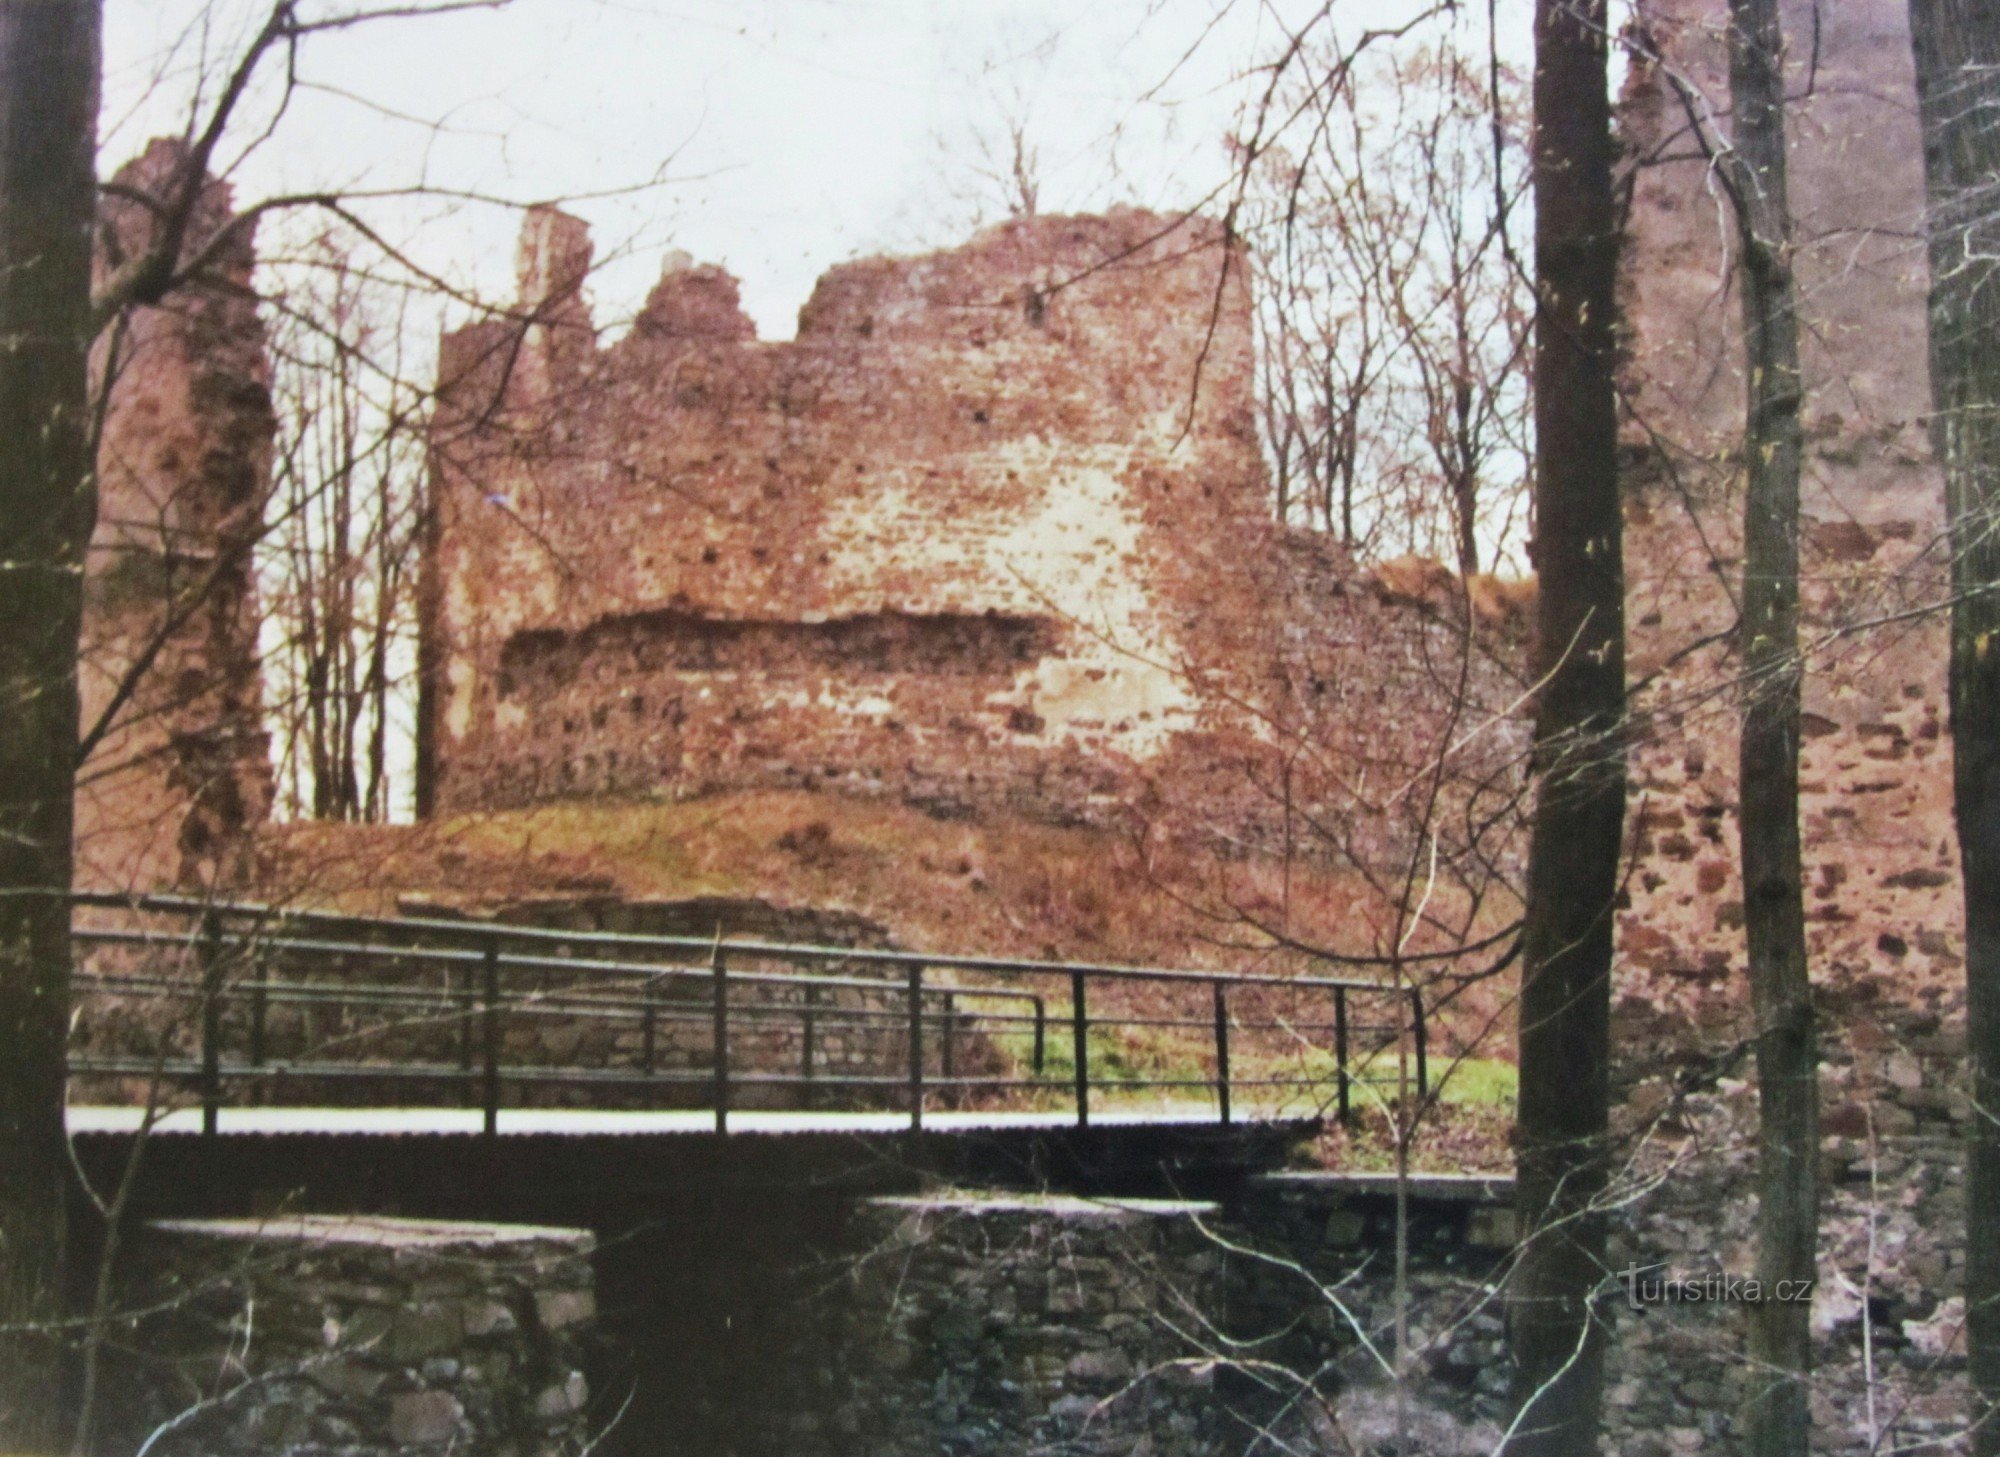 Από το Vítkov στο κάστρο Vikštejn και μέσω της κοιλάδας Moravice στο Kružberské skály - 2007